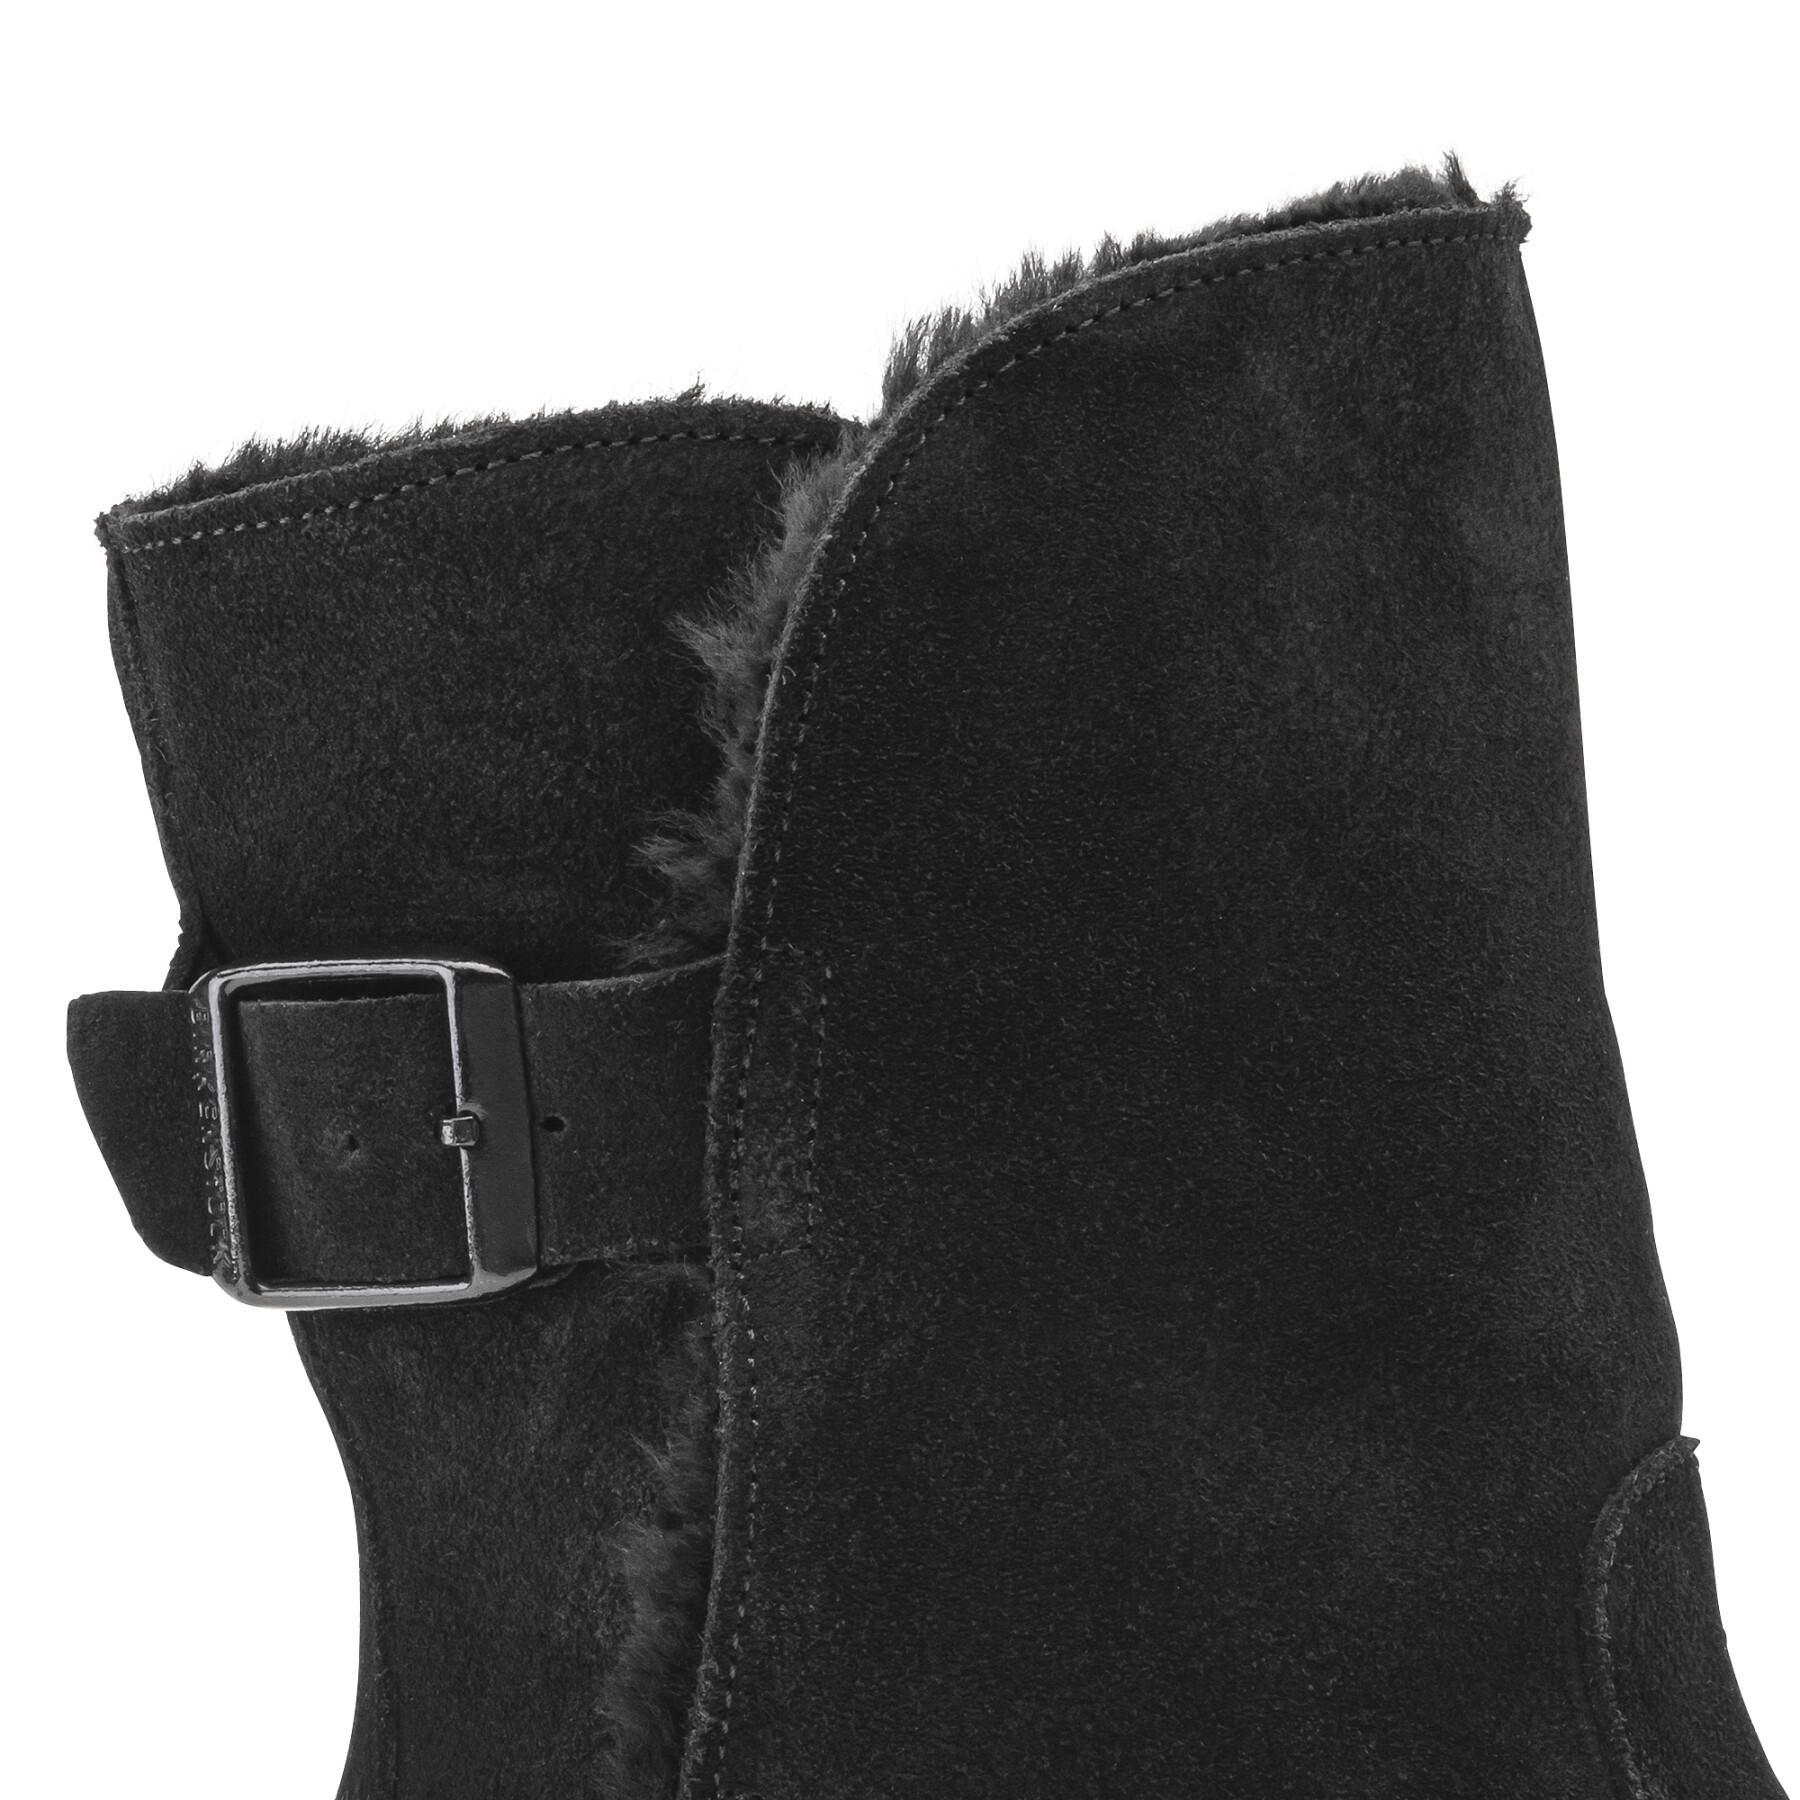 Women's boots Birkenstock Uppsala Suede Shearling Narrow Fit